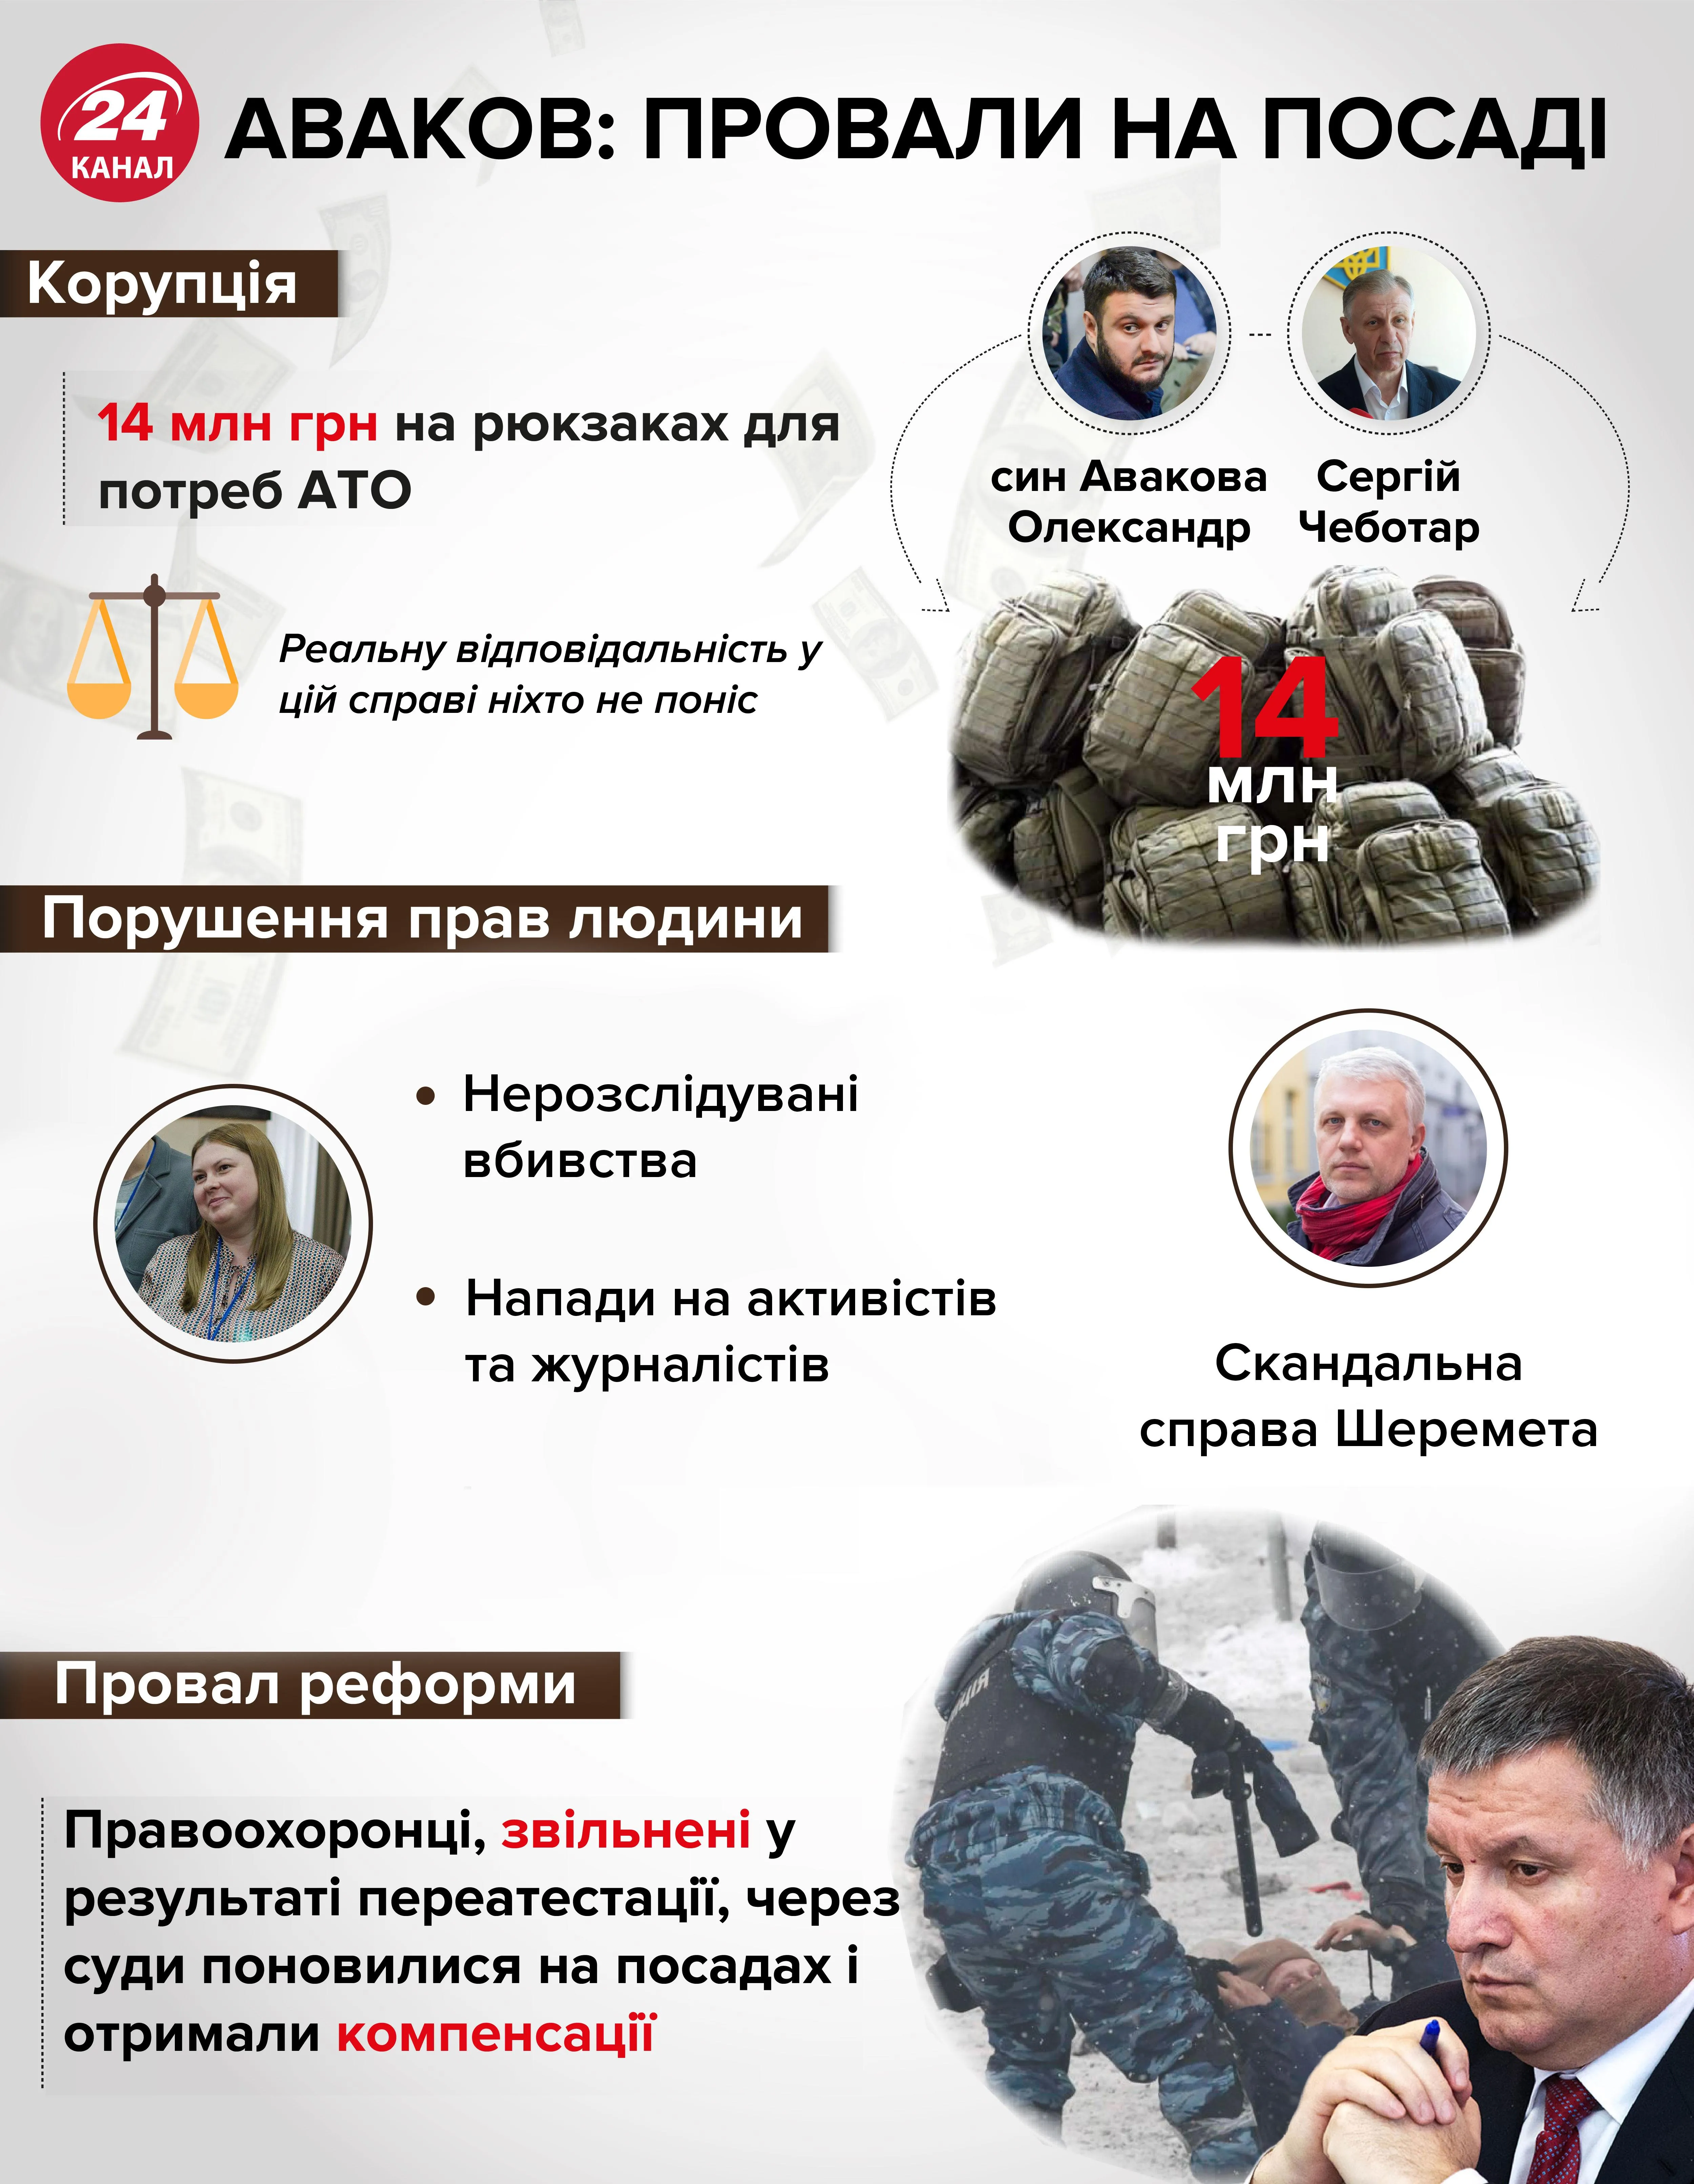 Аваков, МВС, чим запам'ятався Аваков у Міністерстві внутрішніх справ, скандали Авакова